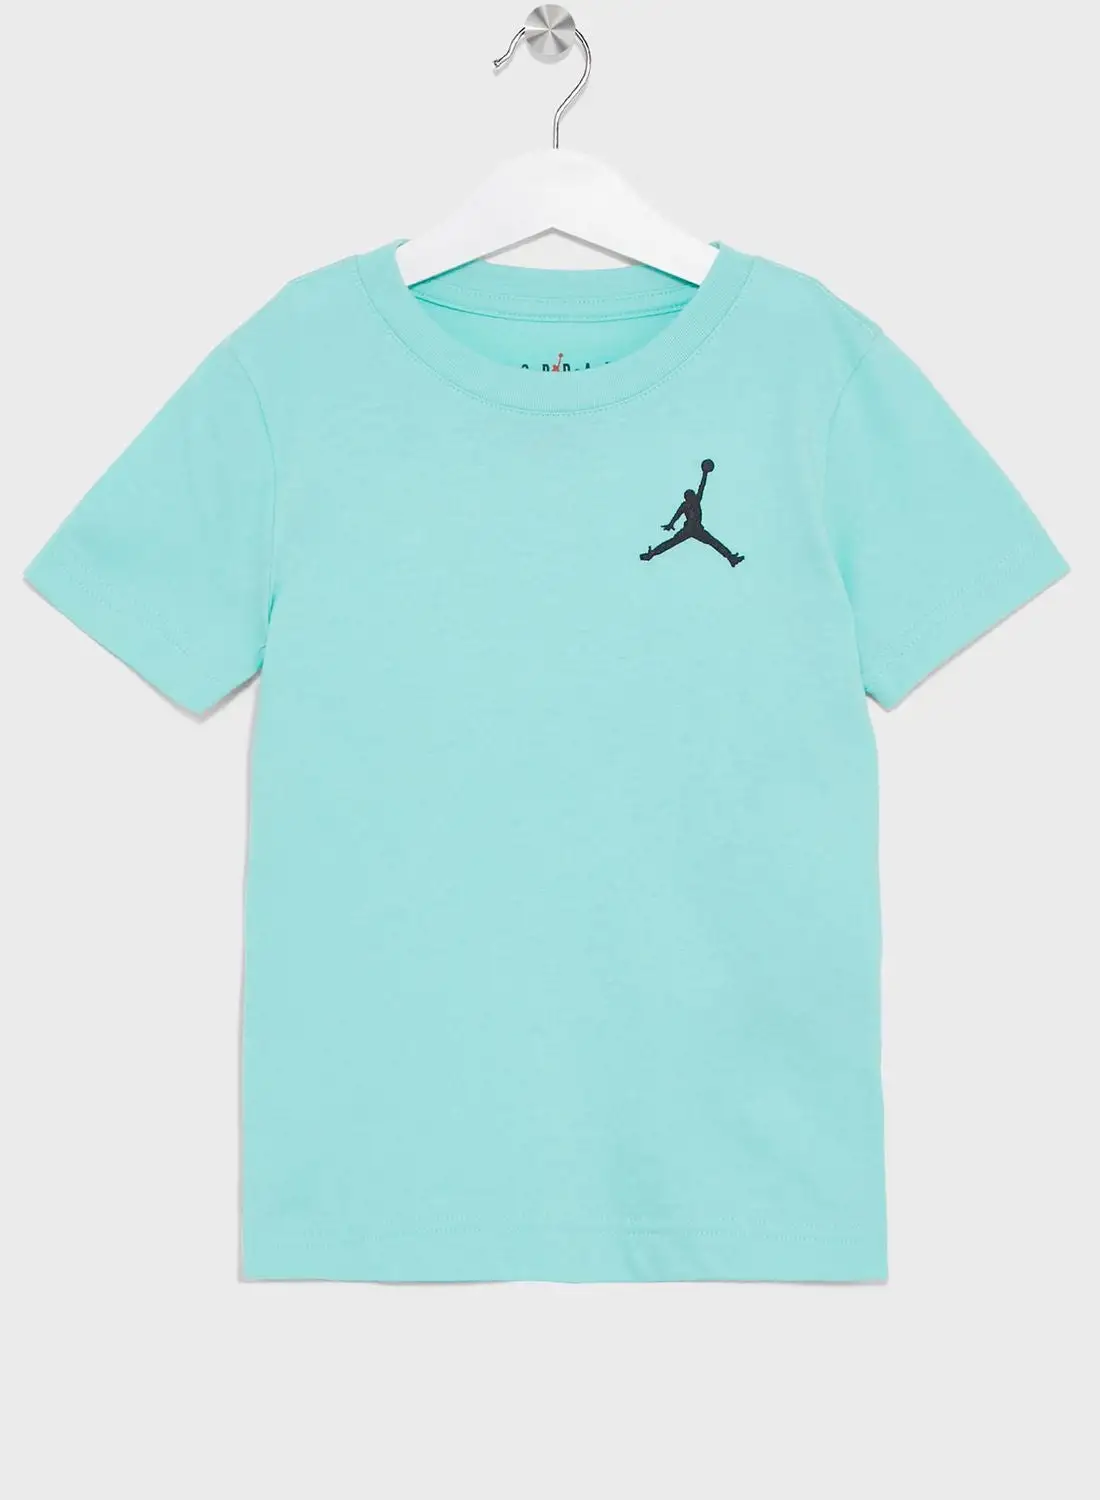 JORDAN Kids Air Jordan Jumpman T-Shirt